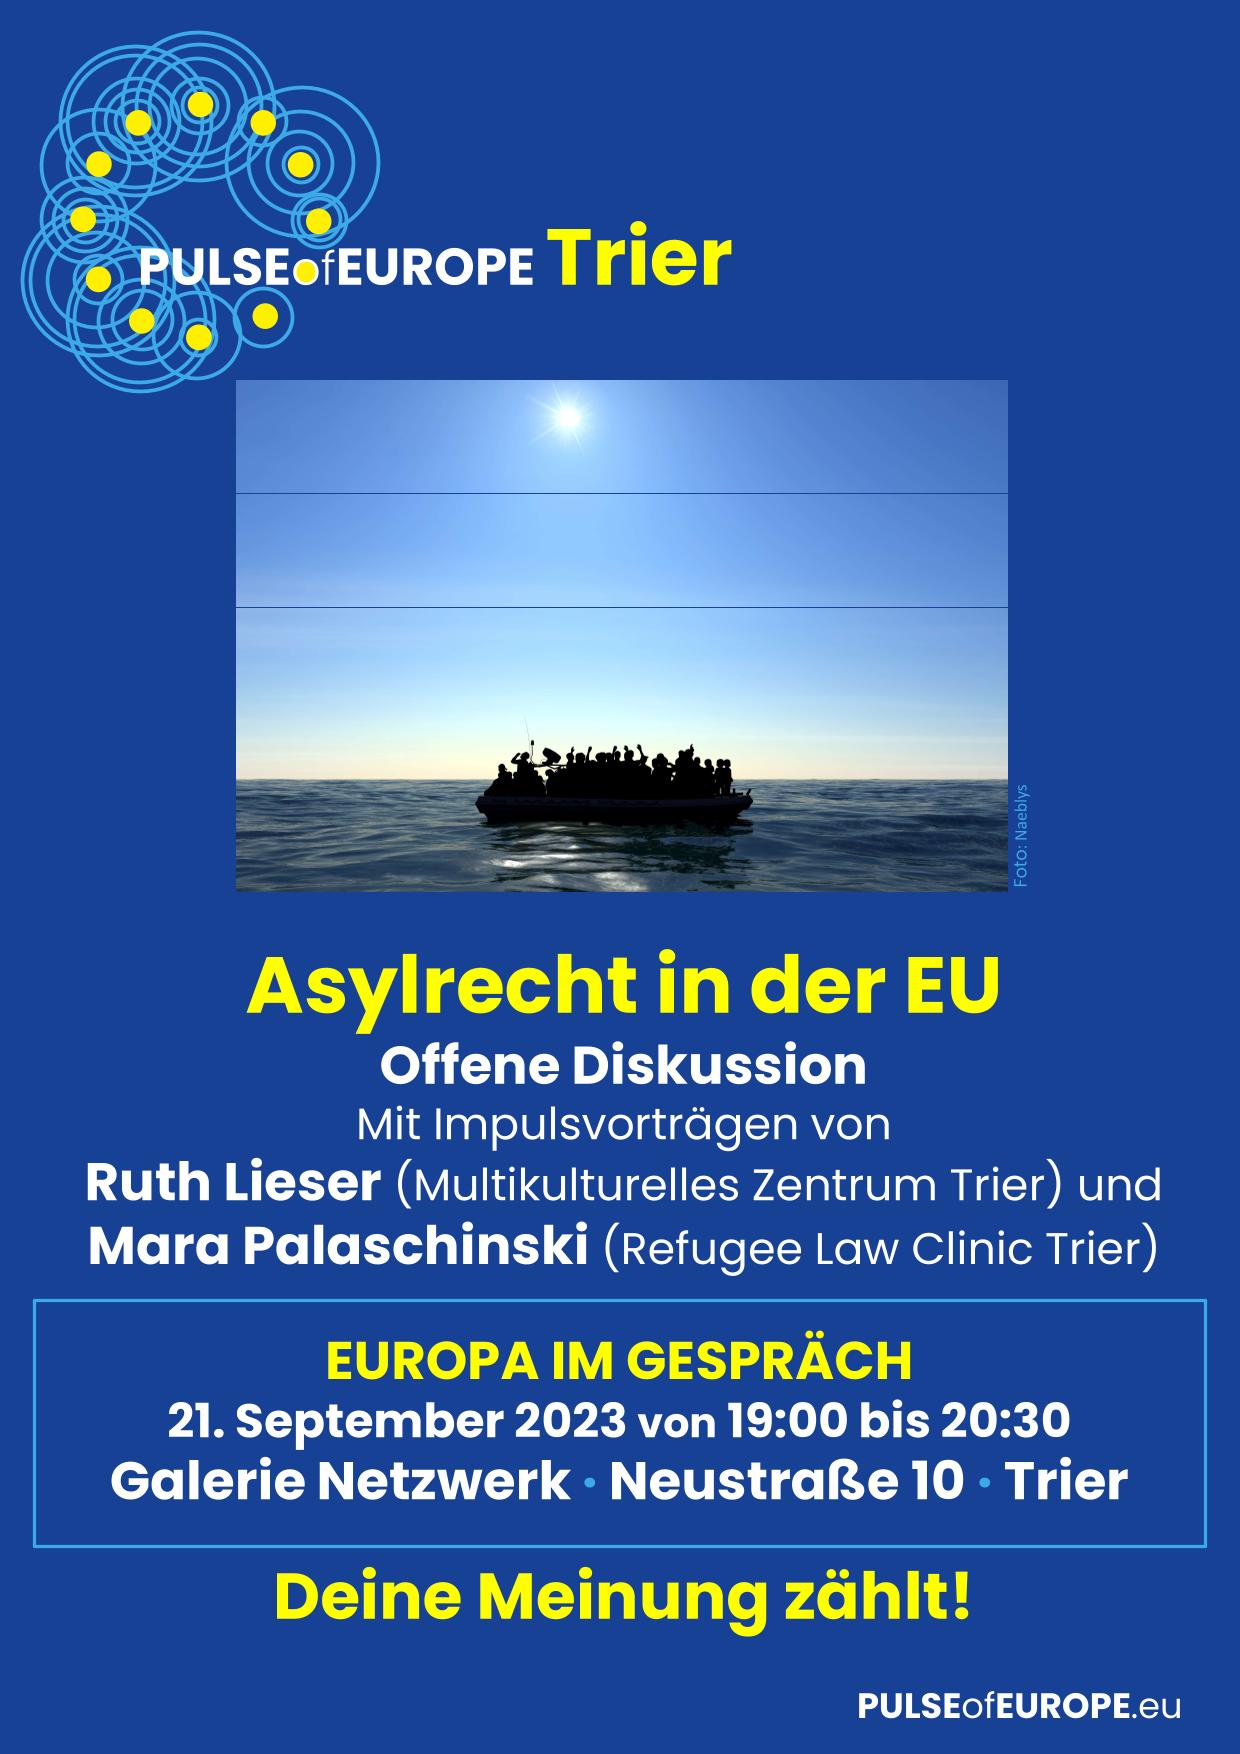 Europa im Gespräch 2023 : Asylrecht in der EU. Impulsvortrag von Ruth Lieser (Multikulturelles Zentrum Trier) und Mara Palaschinski (Refugee Law Clinic Trier)